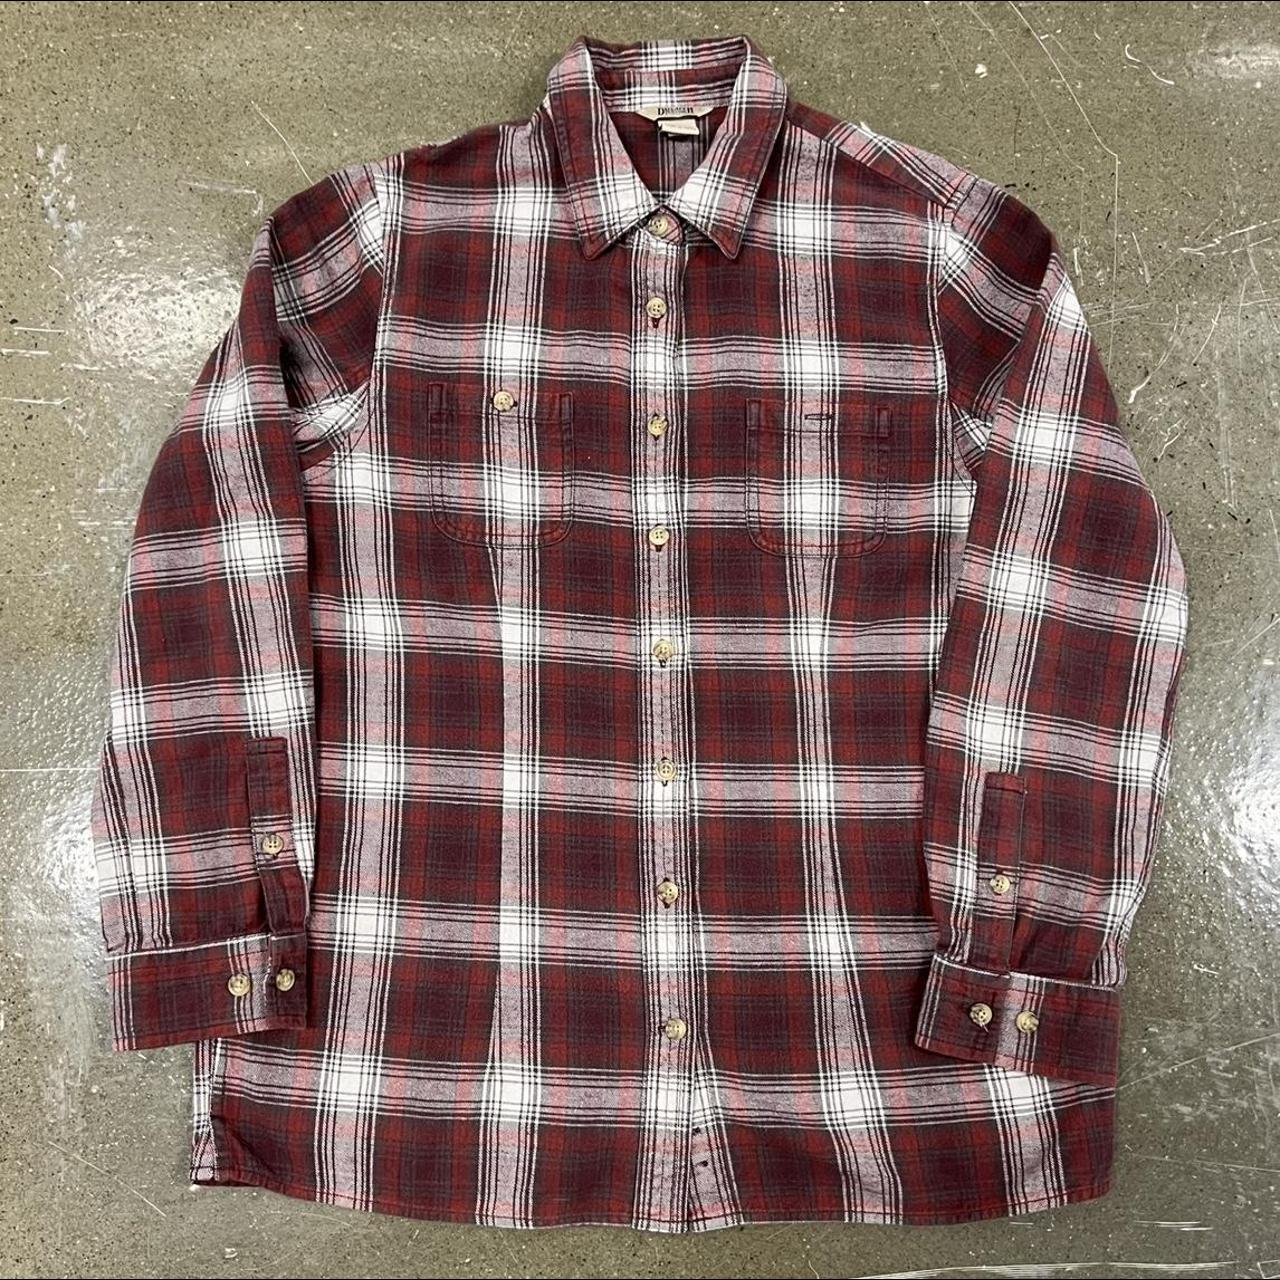 Vintage 90s Plaid Flannel Button Down Shirt Size:... - Depop